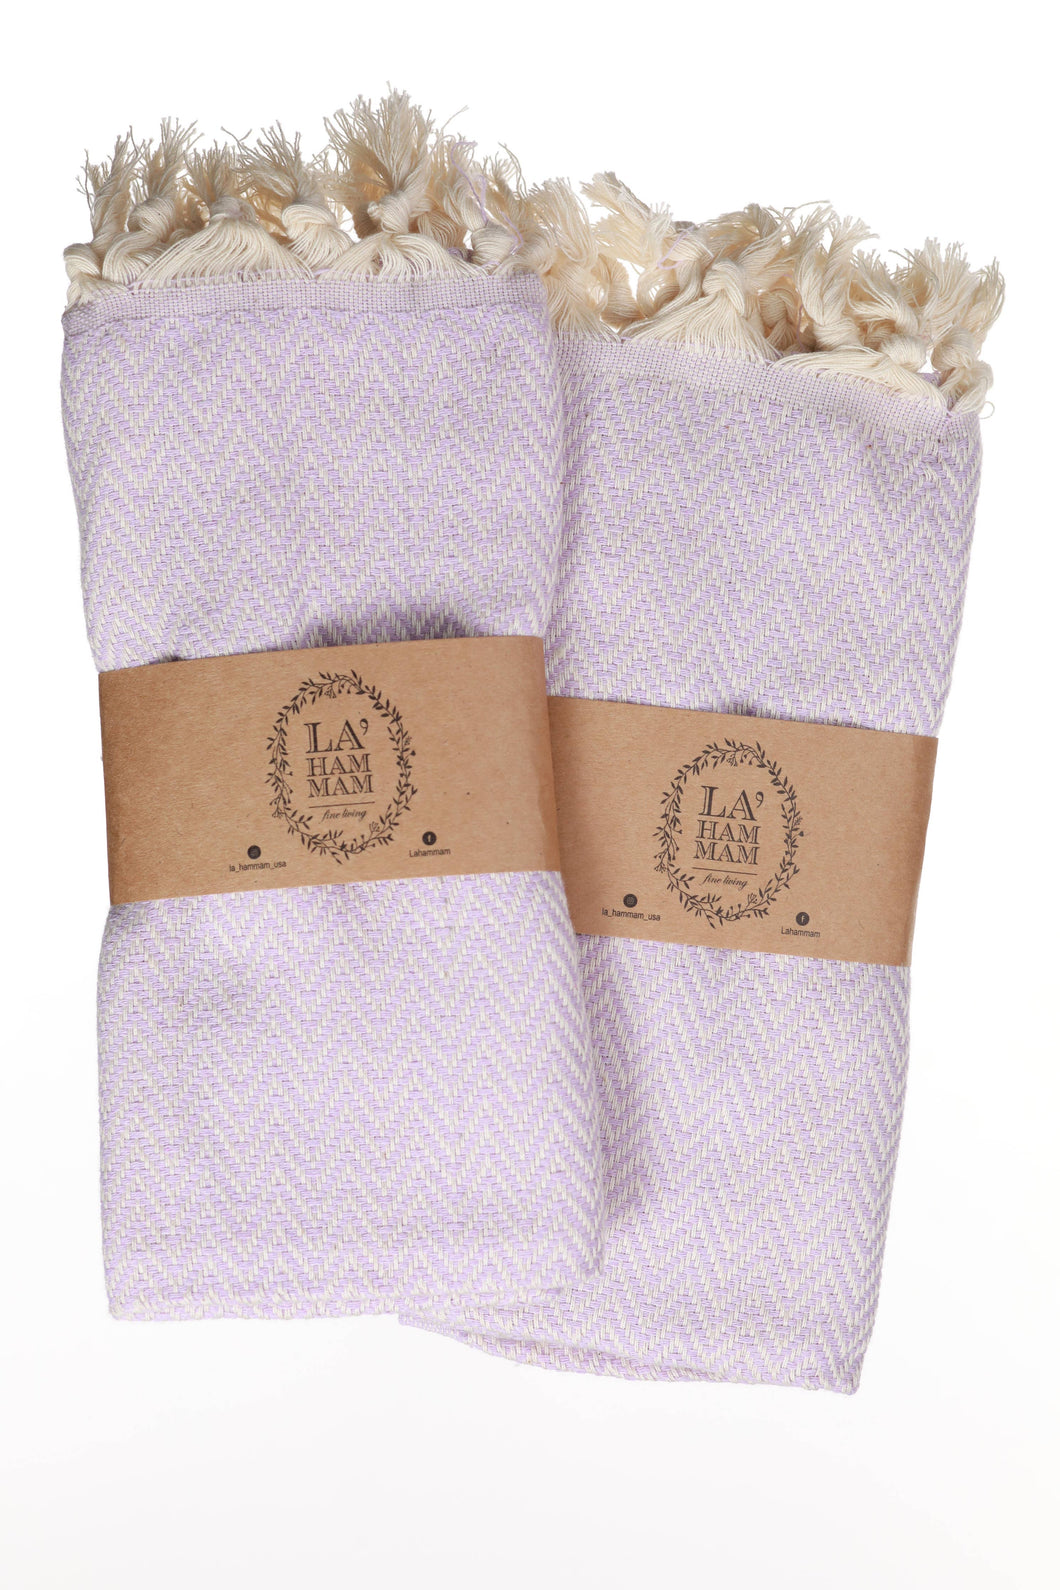 Zigzag Turkish Cotton Kitchen / Hand Towel  40x18 in